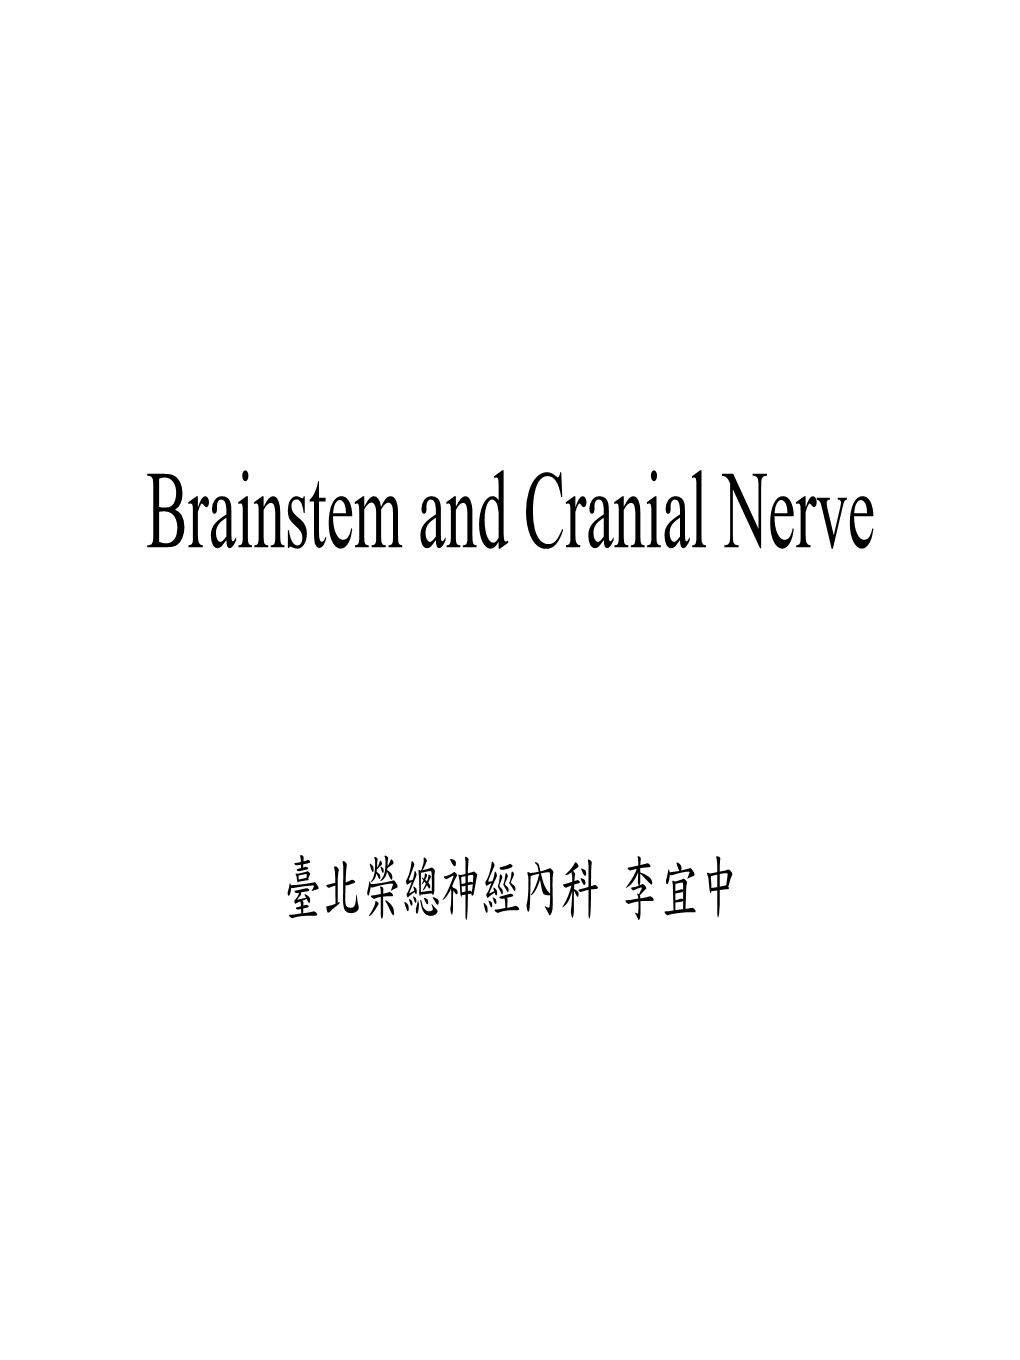 Brainstem and Cranial Nerve